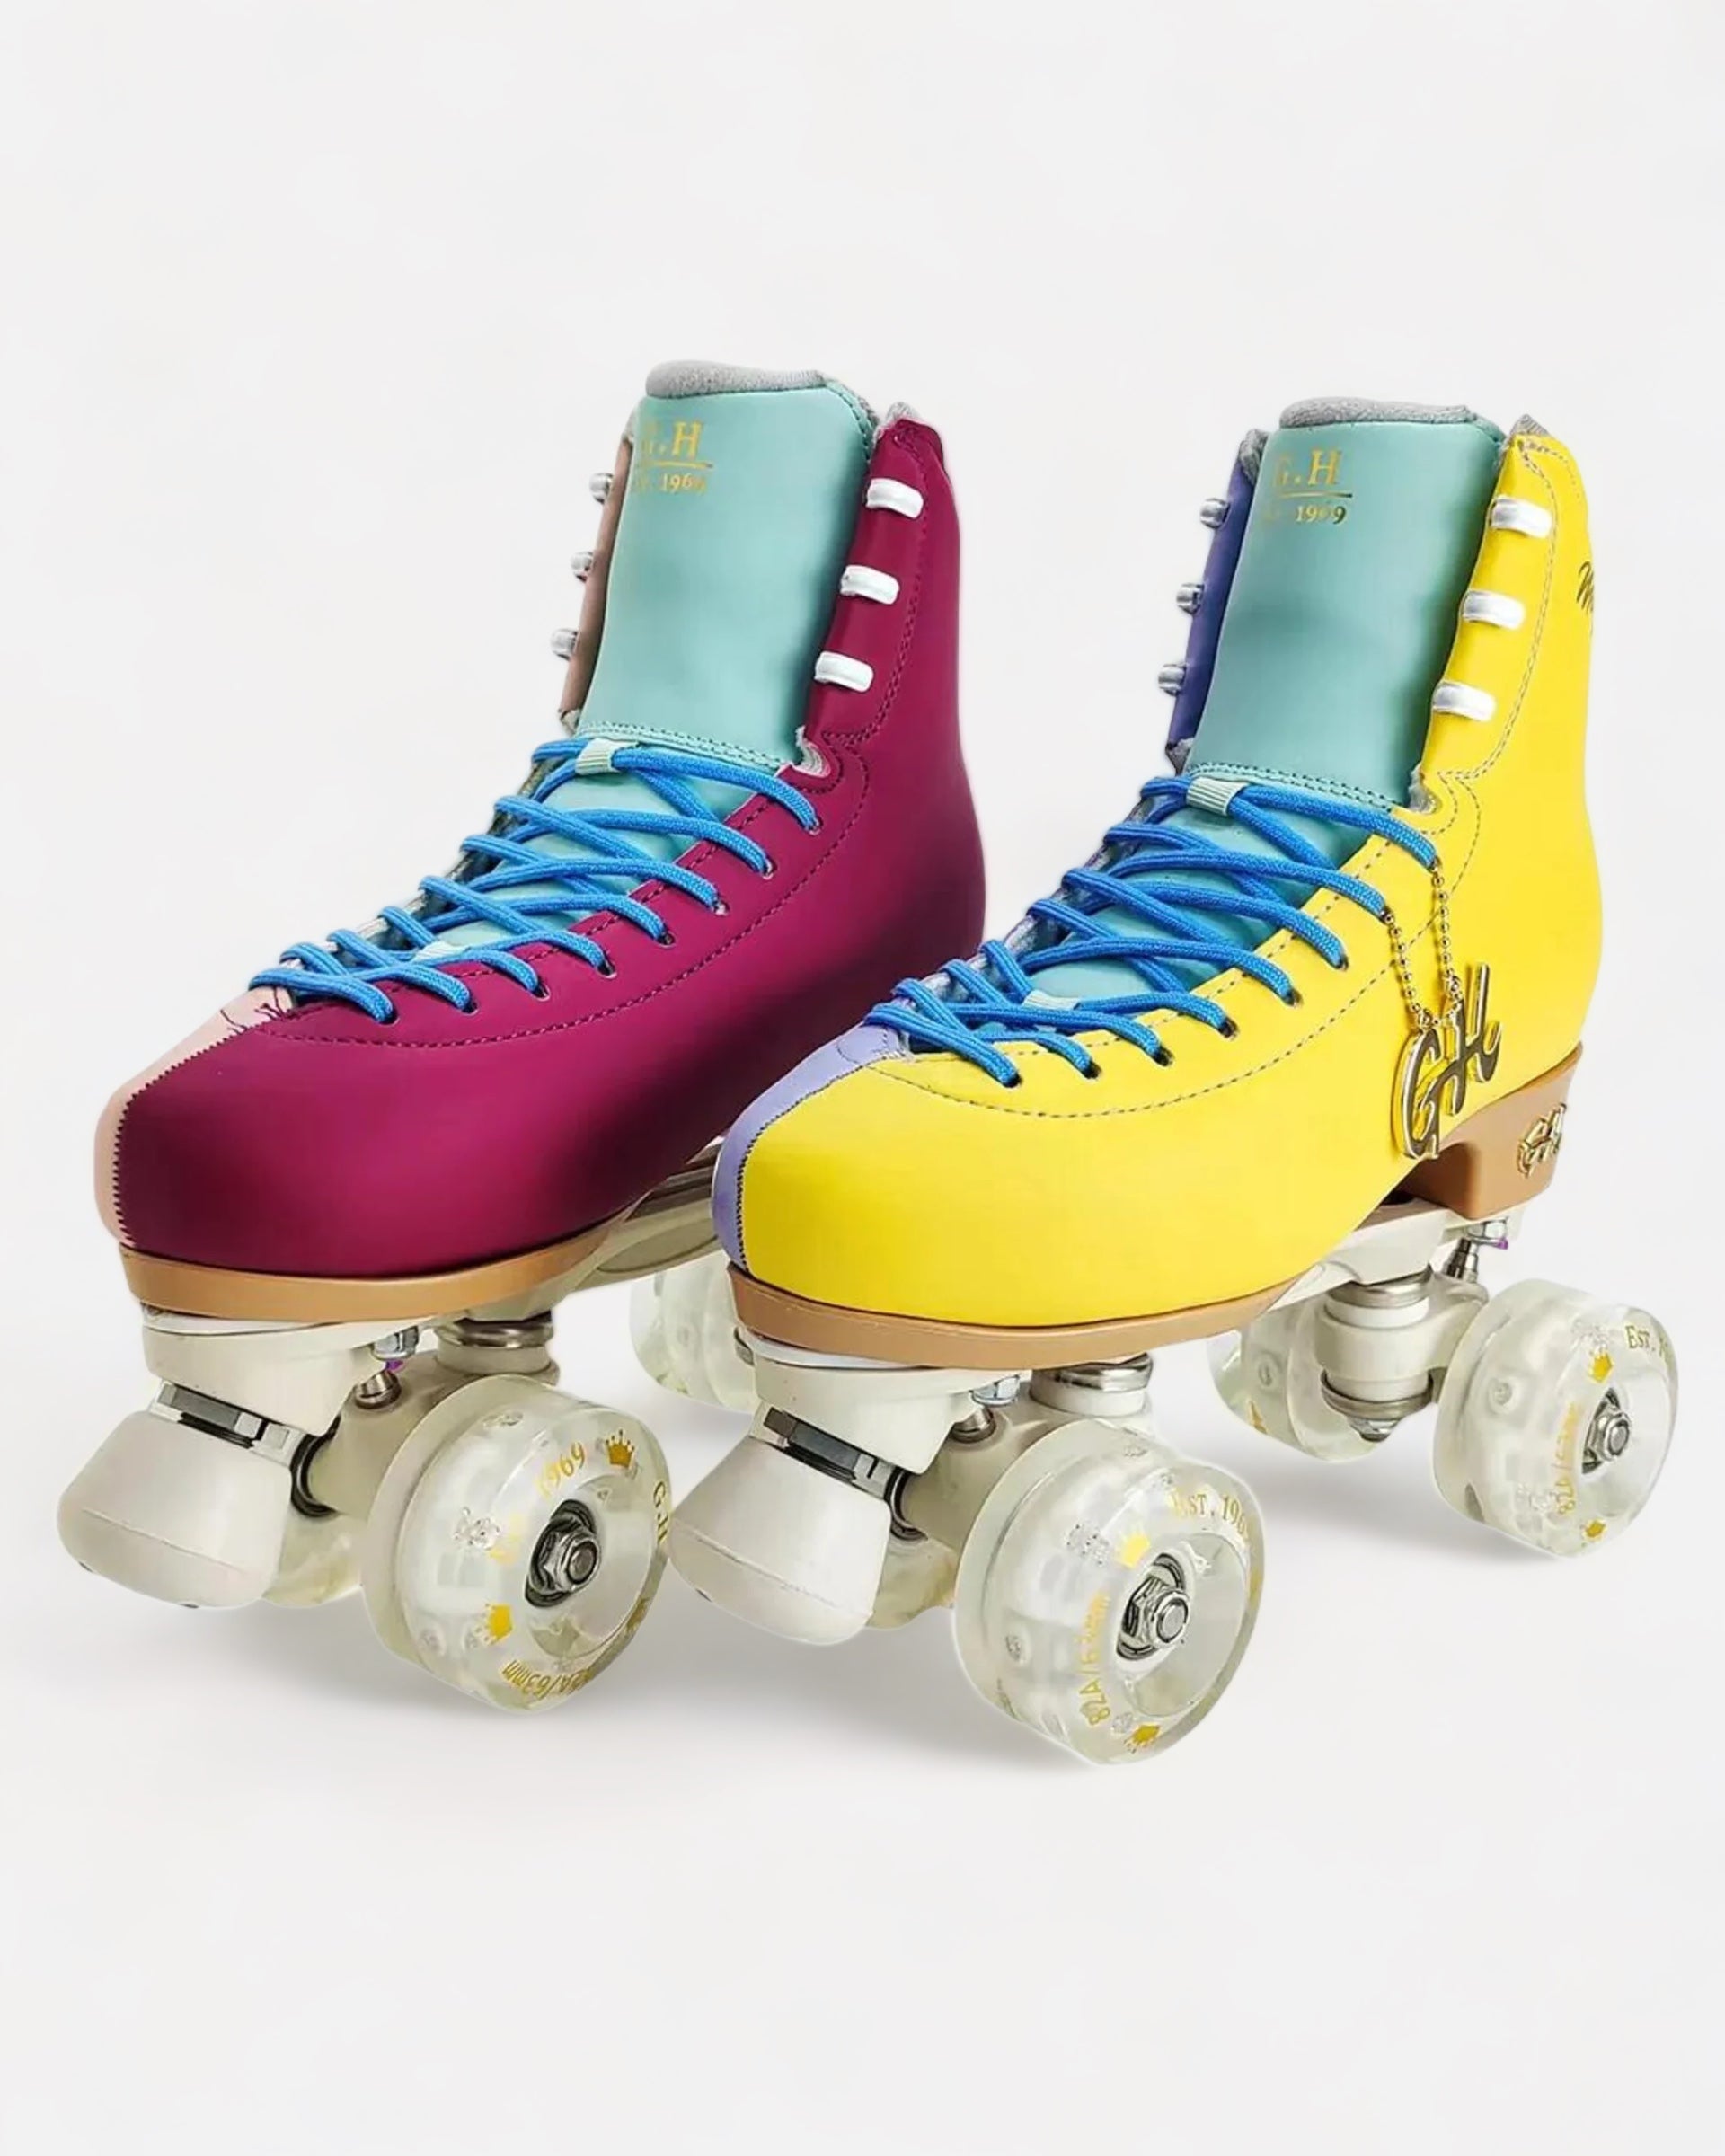 Magic Quad Roller Skates(vegan leather）Color Jam